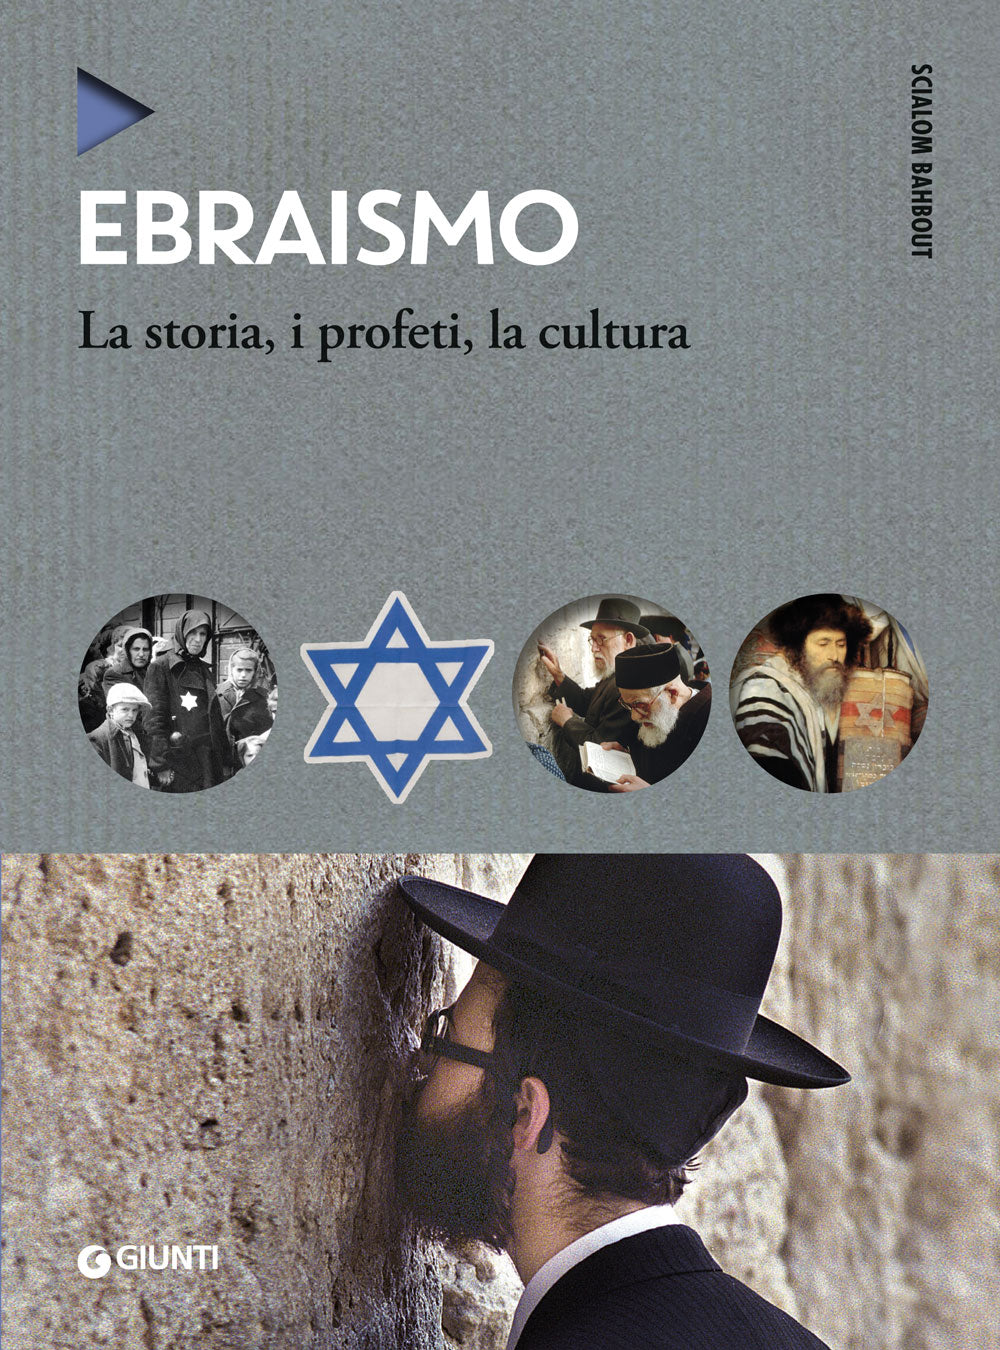 Ebraismo::La storia, i profeti, la cultura